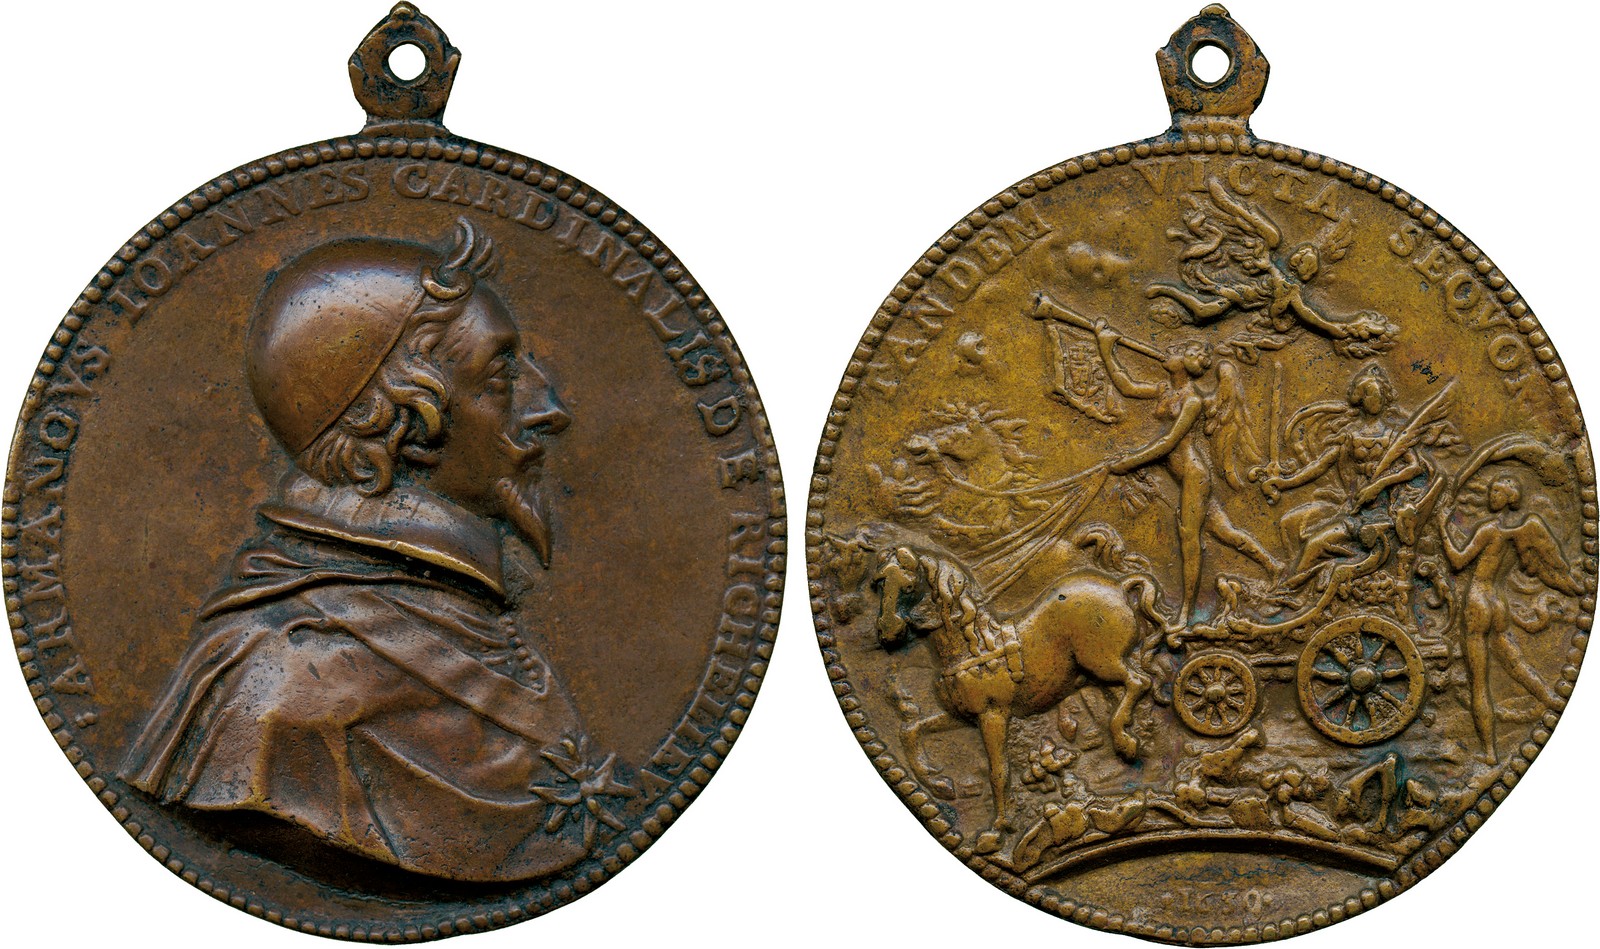 COMMEMORATIVE MEDALS, WORLD MEDALS, France, Arm-Jean du Plessis de Richelieu, Cardinal-Duc de